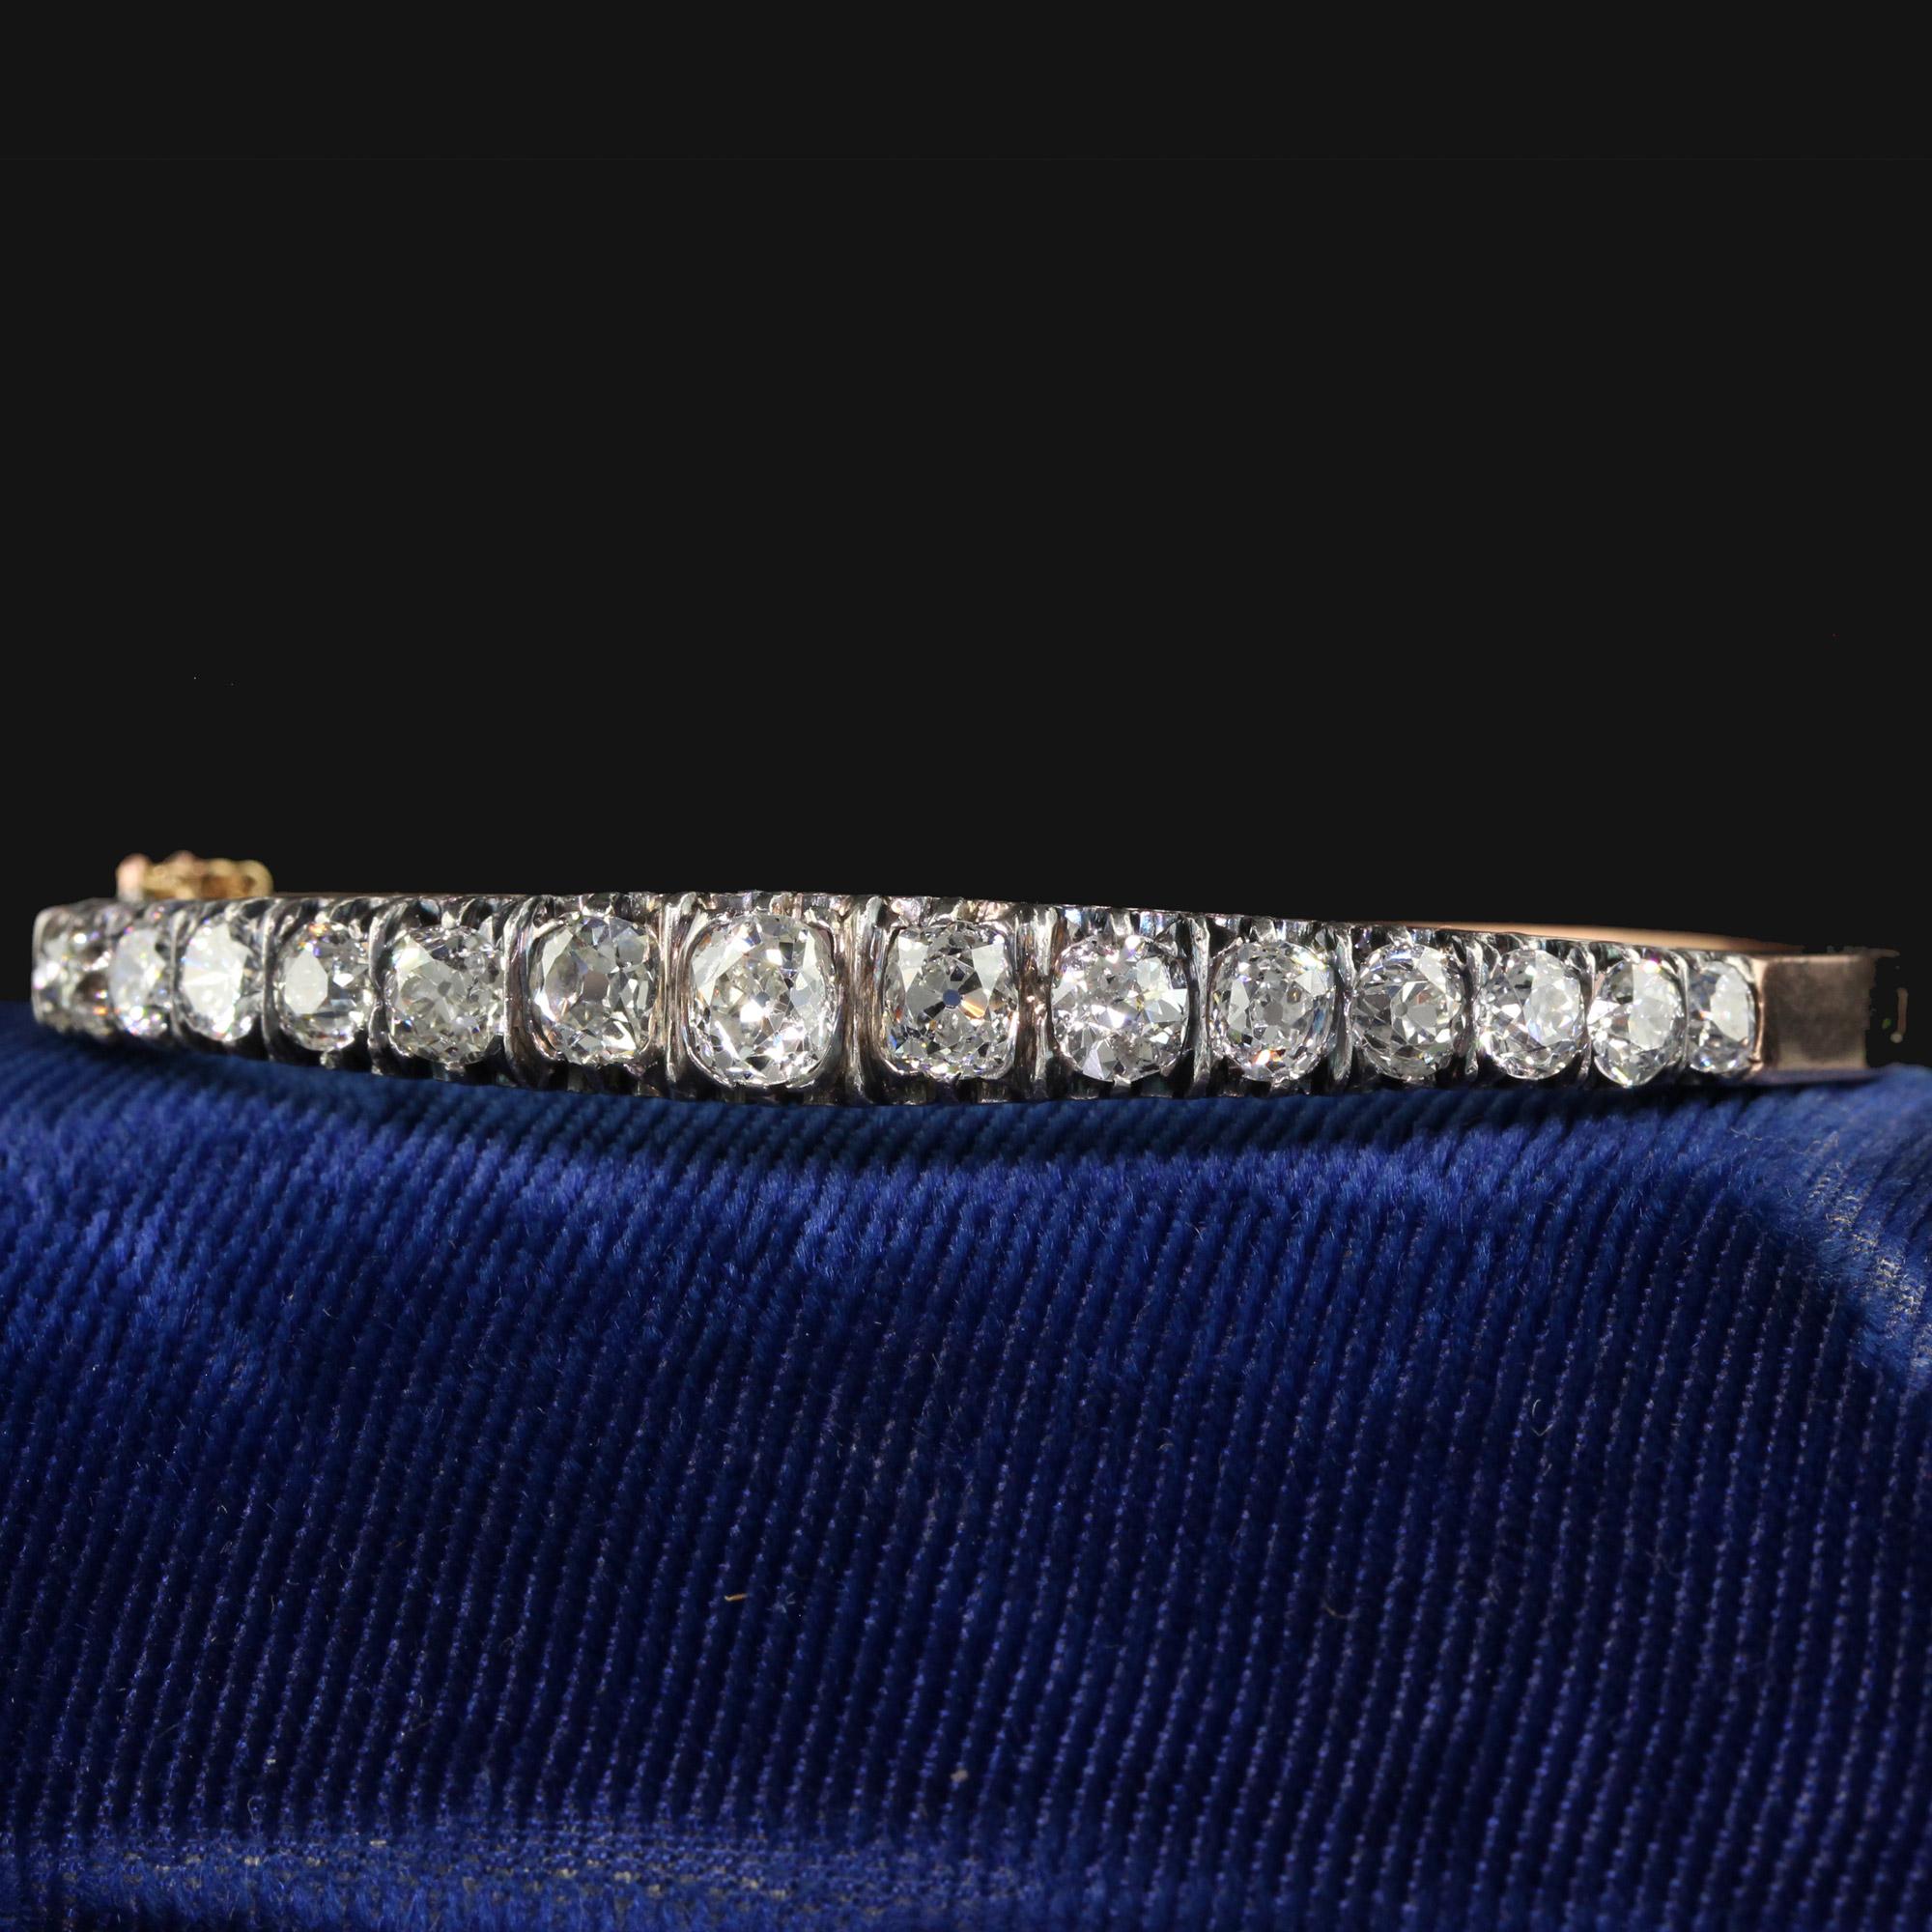 Magnifique bracelet de style victorien français en or jaune 18K avec diamants de la vieille mine. Cet incroyable bracelet victorien à lignes de diamants d'anciennes mines est réalisé en or jaune 18 carats et en argent. Le haut du bracelet est orné